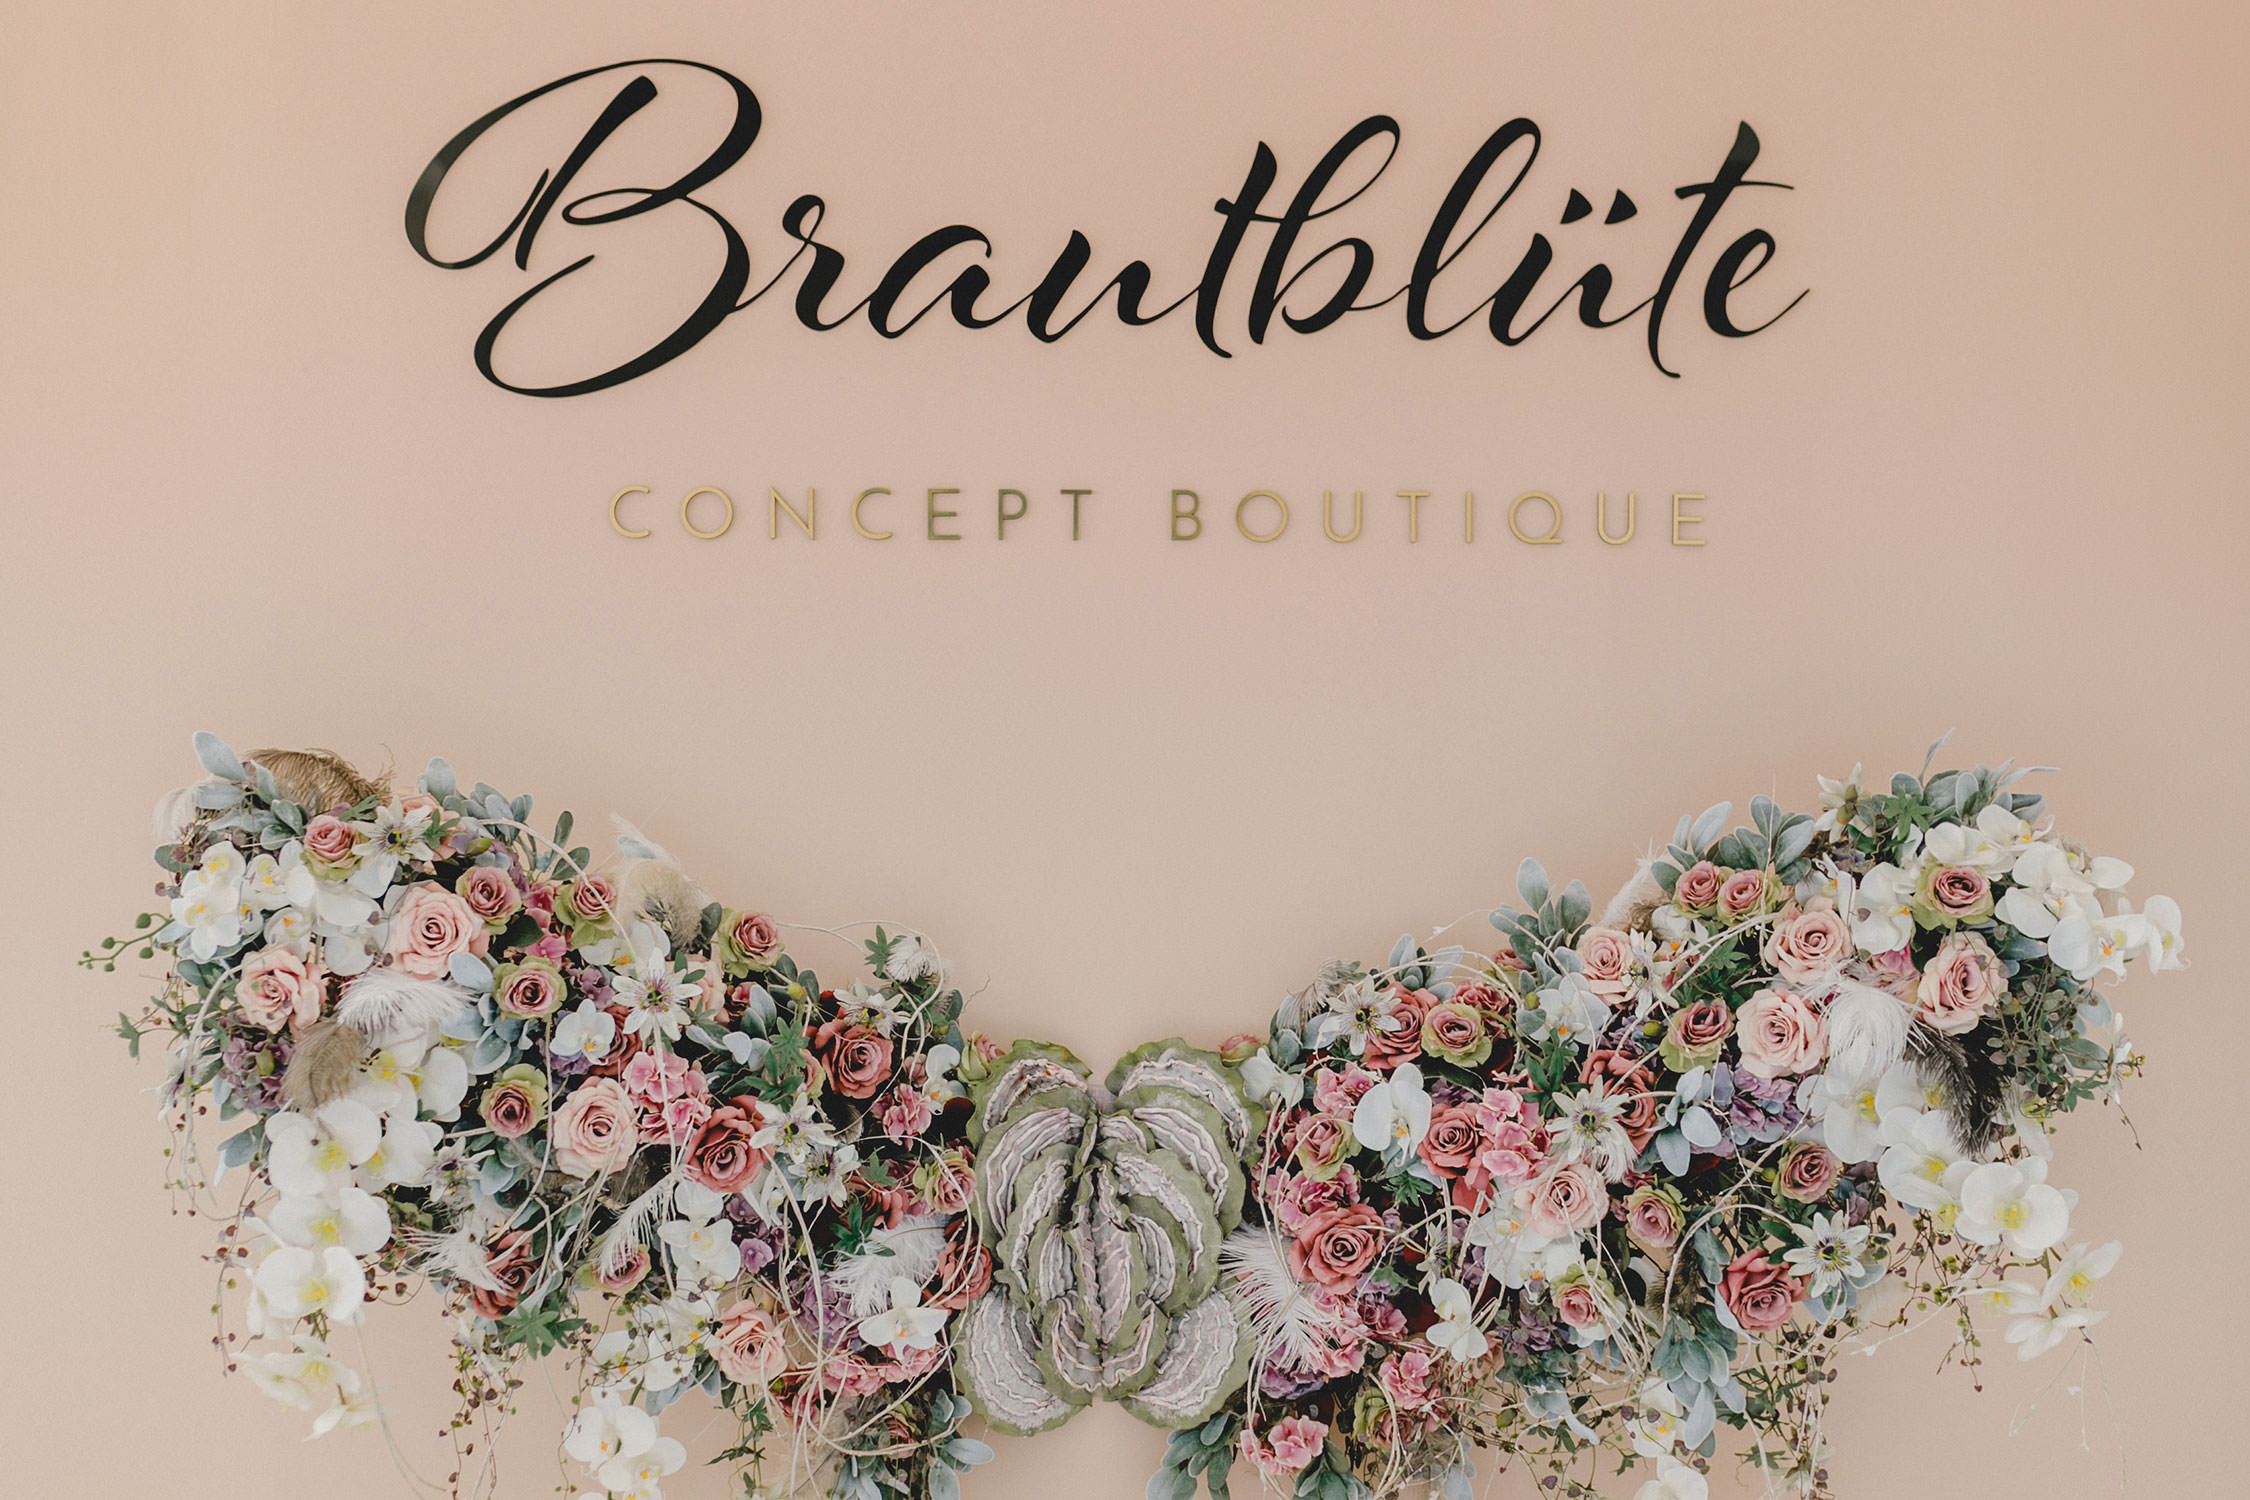 Store Design of Brautbluete